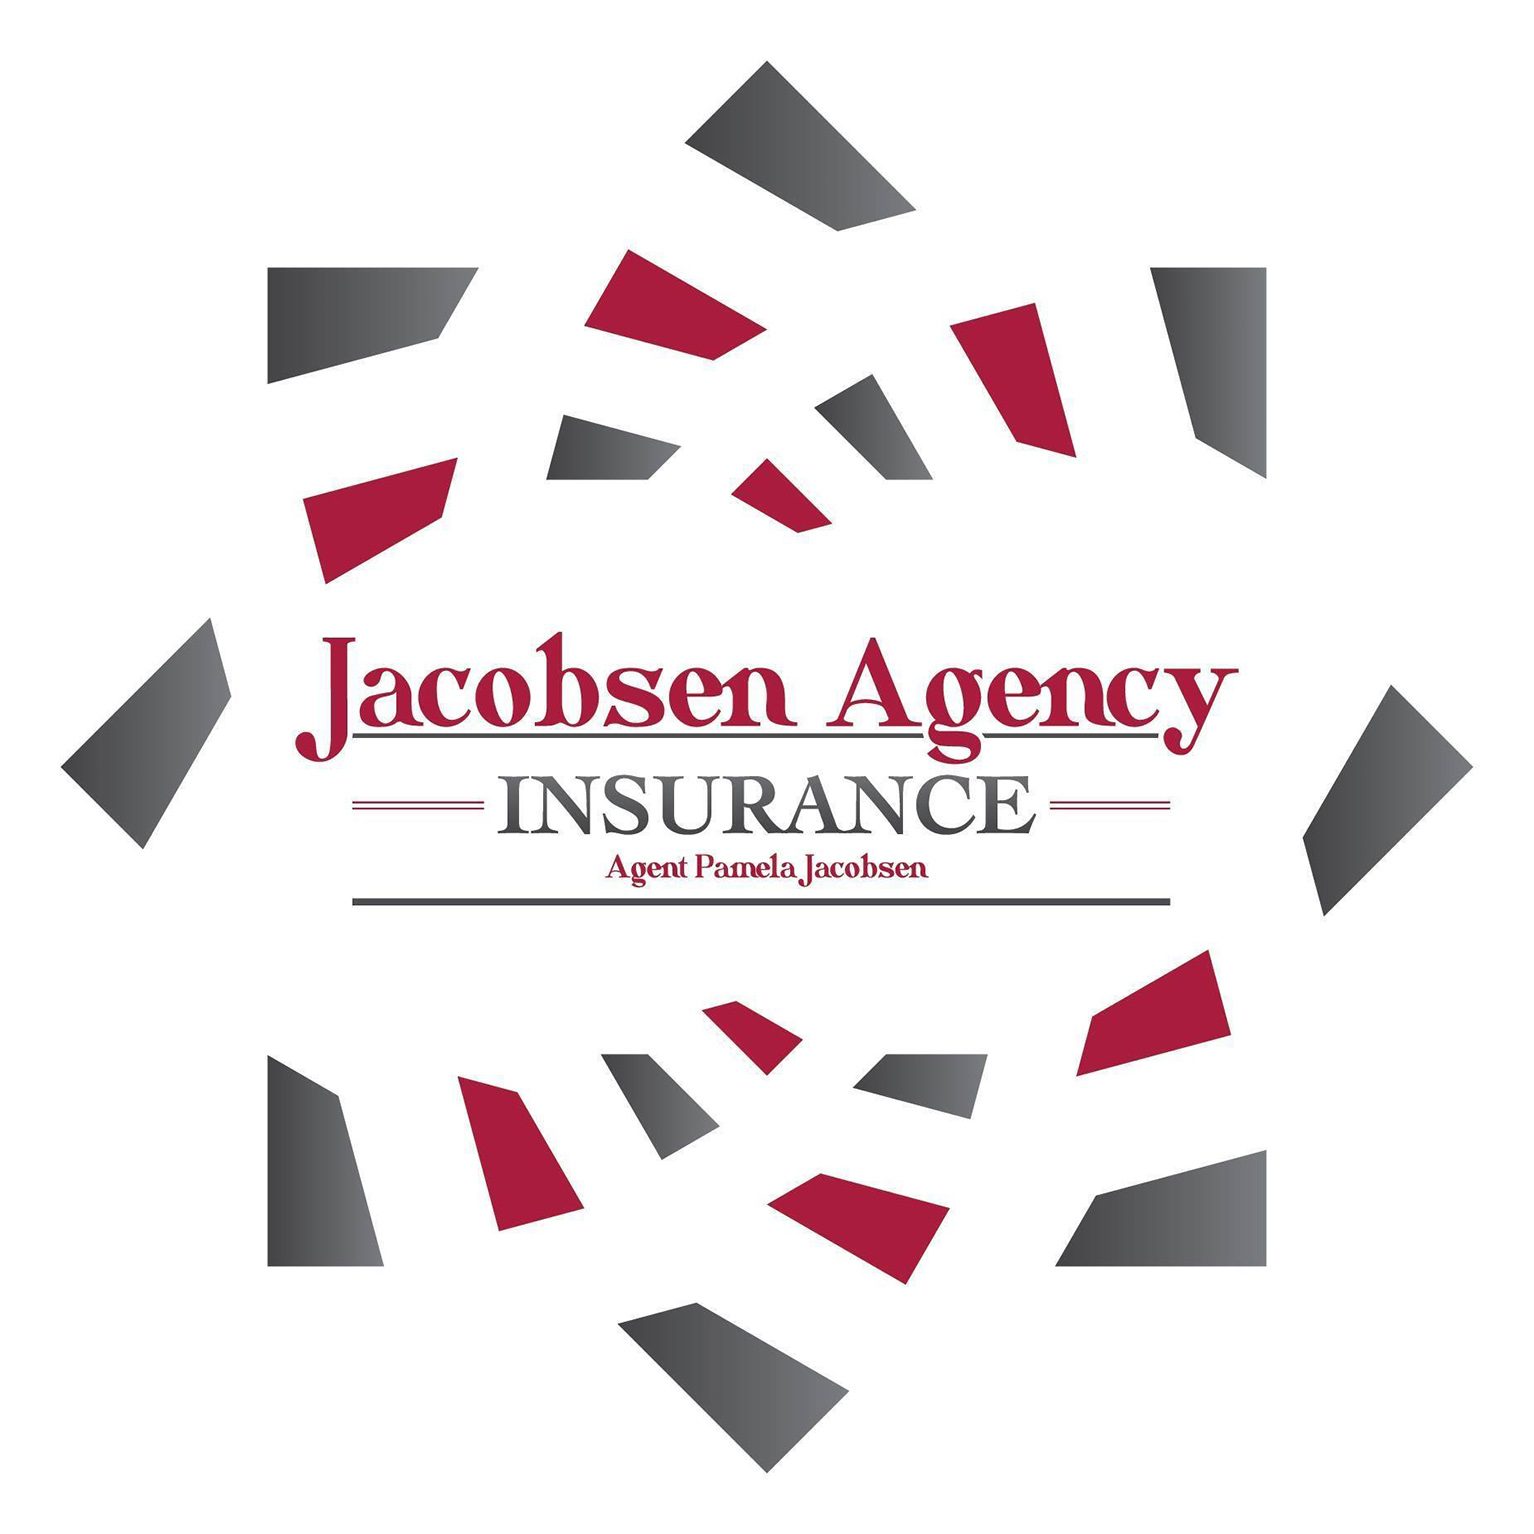 Jacobsen Agency Insurance